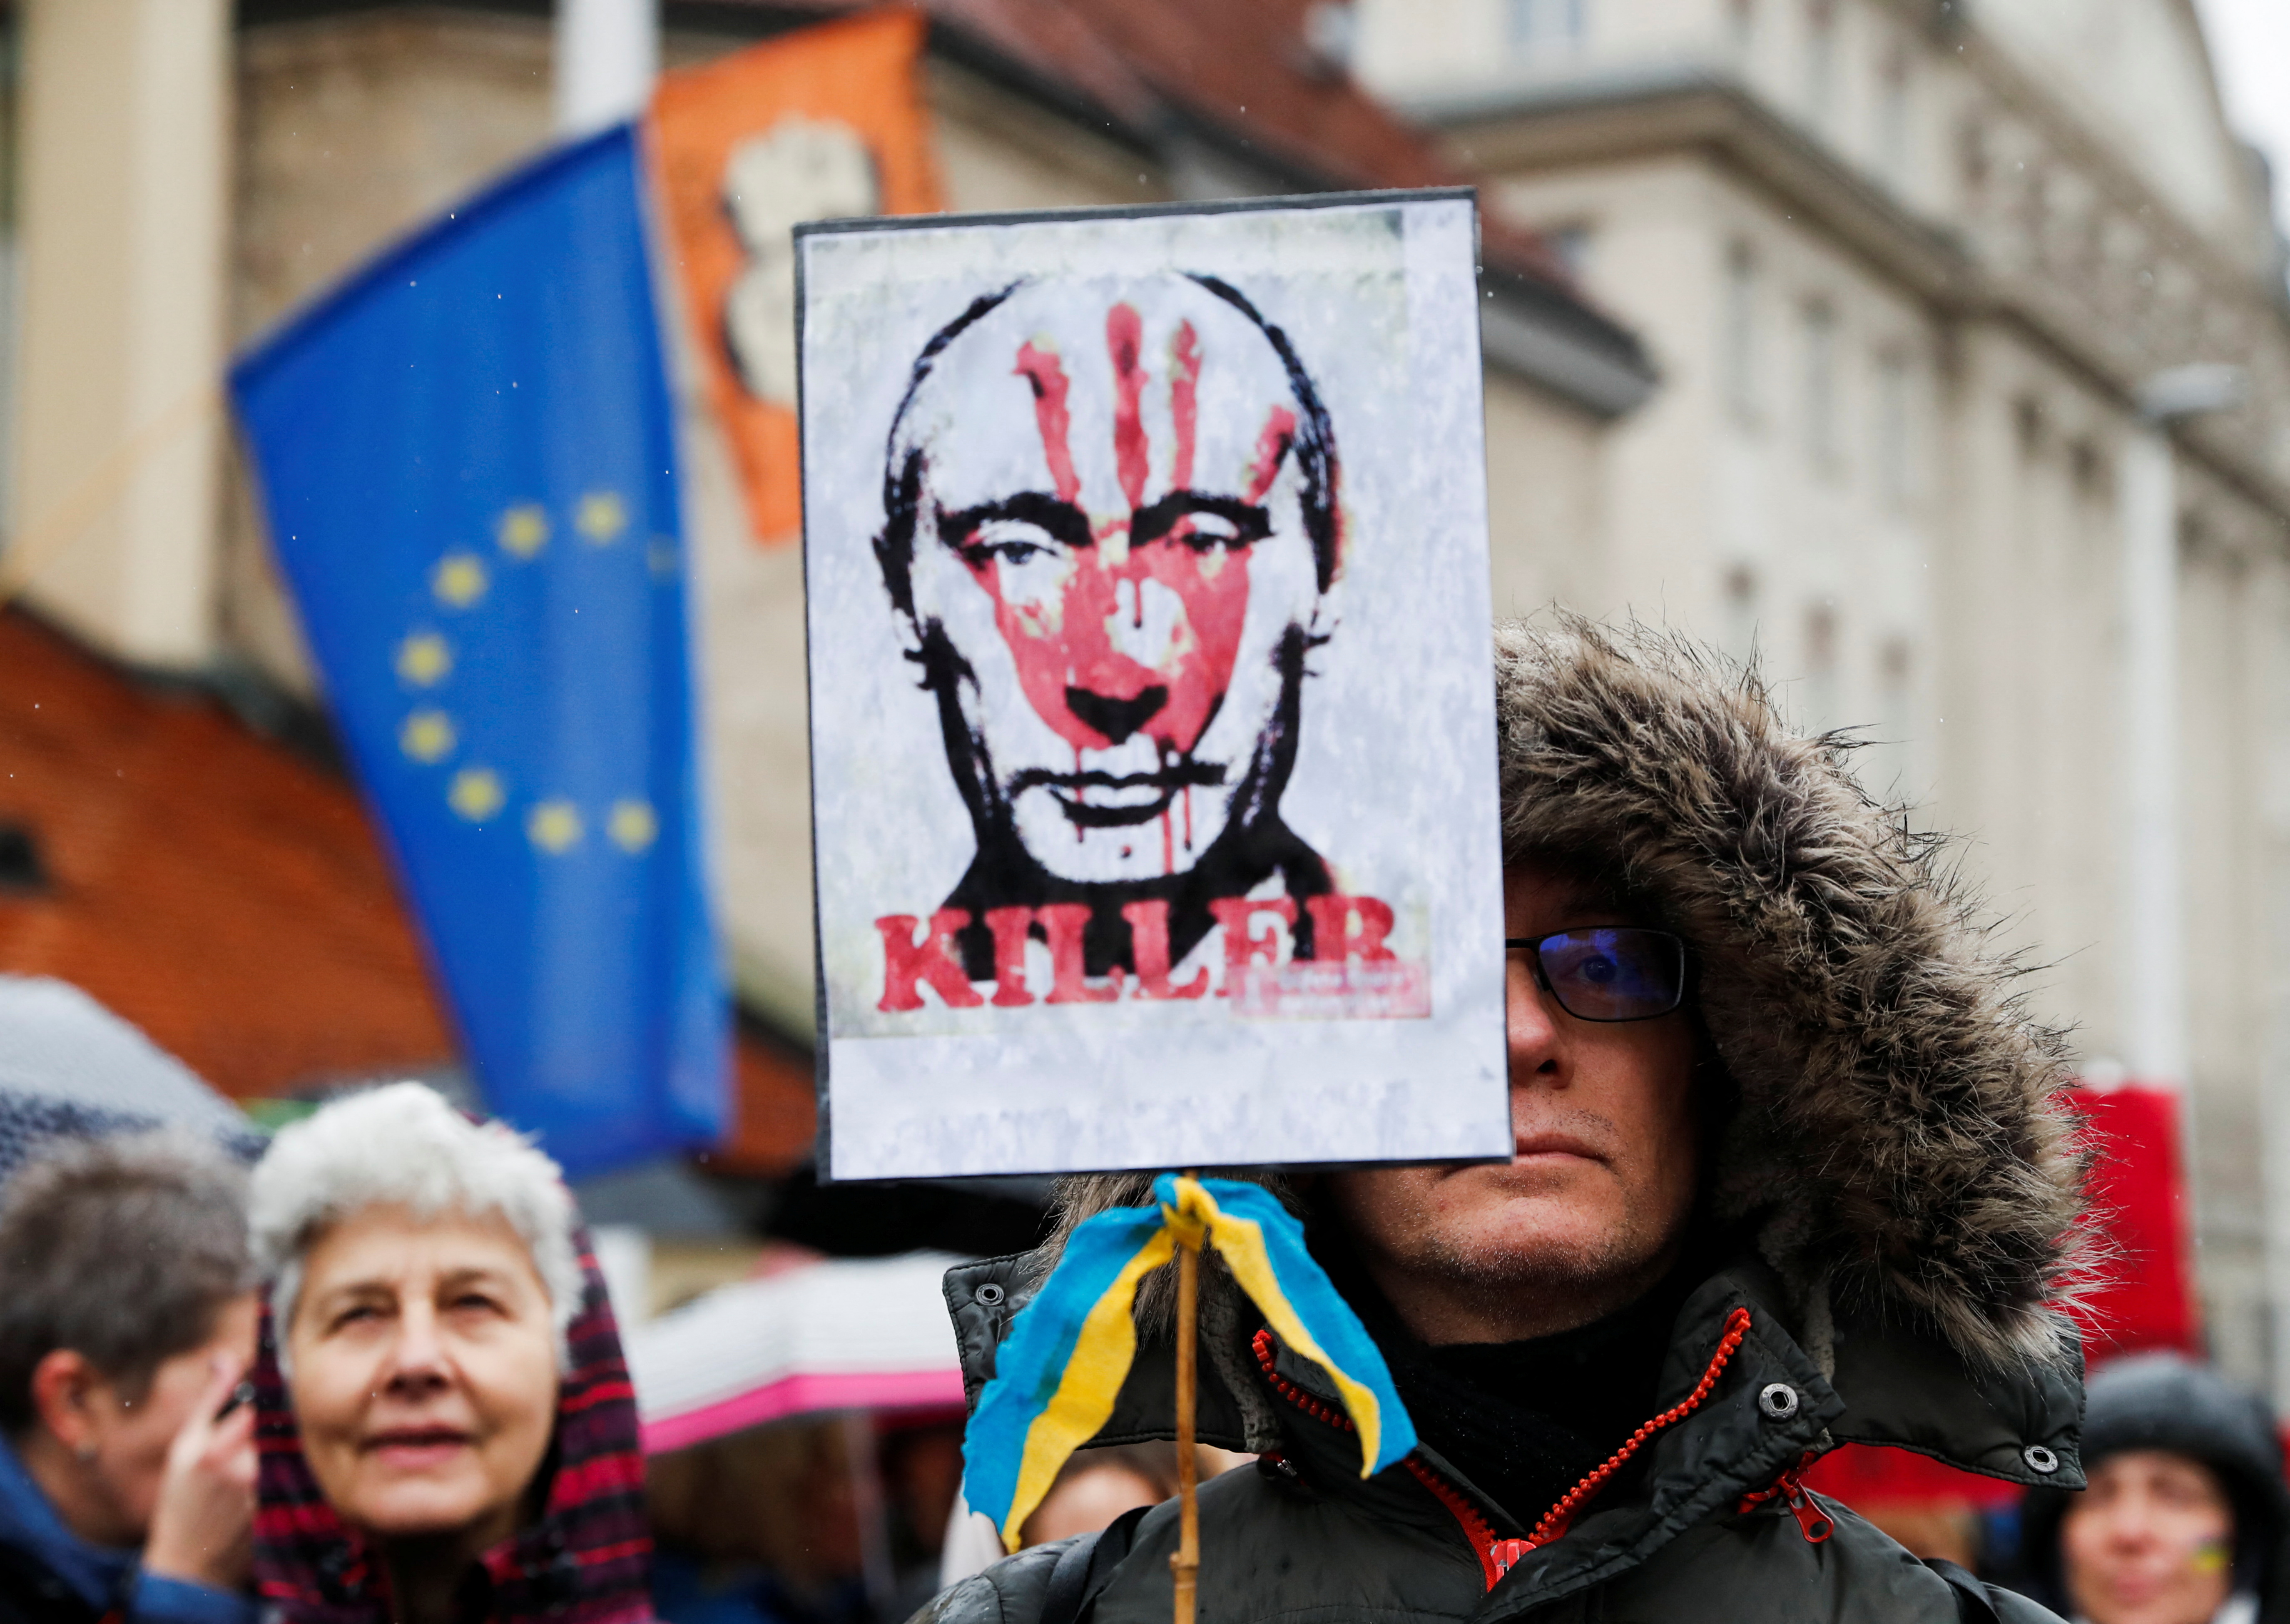 Una persona lleva un cartel que representa a Putin y dice "Asesino", durante una Marcha de las Madres en Budapest, Hungría, el 2 de abril de 2022 (REUTERS/Bernadett Szabo)
